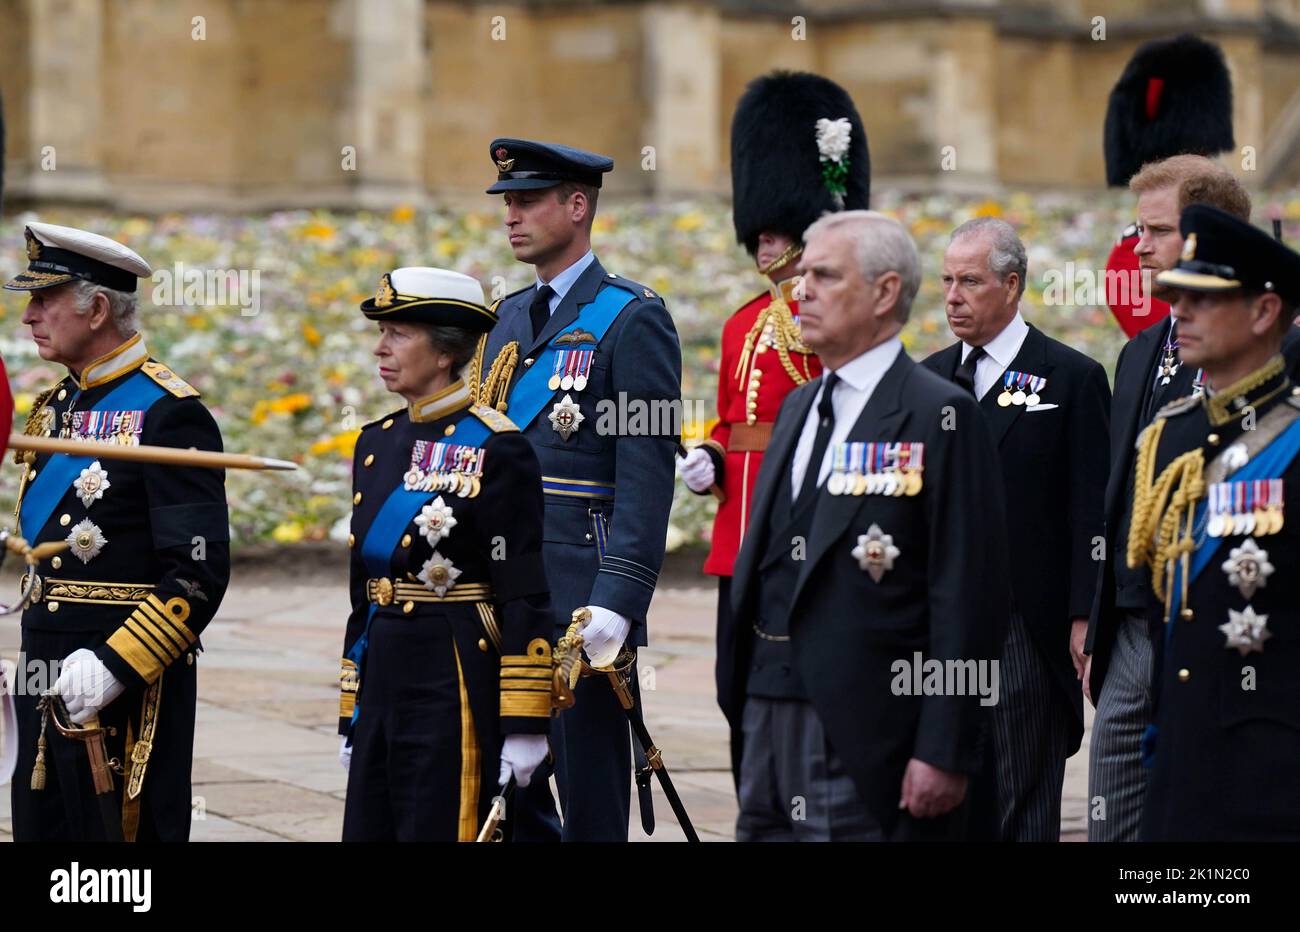 (De izquierda a derecha) El rey Carlos III, la princesa Royal, el príncipe de Gales, el duque de York, el conde de Snowdon, el duque de Sussex y el conde de Wessex siguen el State Hearse lleva el ataúd de la reina Isabel II, Dibujado en el Estándar Real con la Corona Imperial del Estado y el Orb y Cetro del Soberano, durante la Procesión Ceremonial a través del Castillo de Windsor a un Servicio de Compromiso en la Capilla de San Jorge. Fecha de la foto: Lunes 19 de septiembre de 2022. Foto de stock